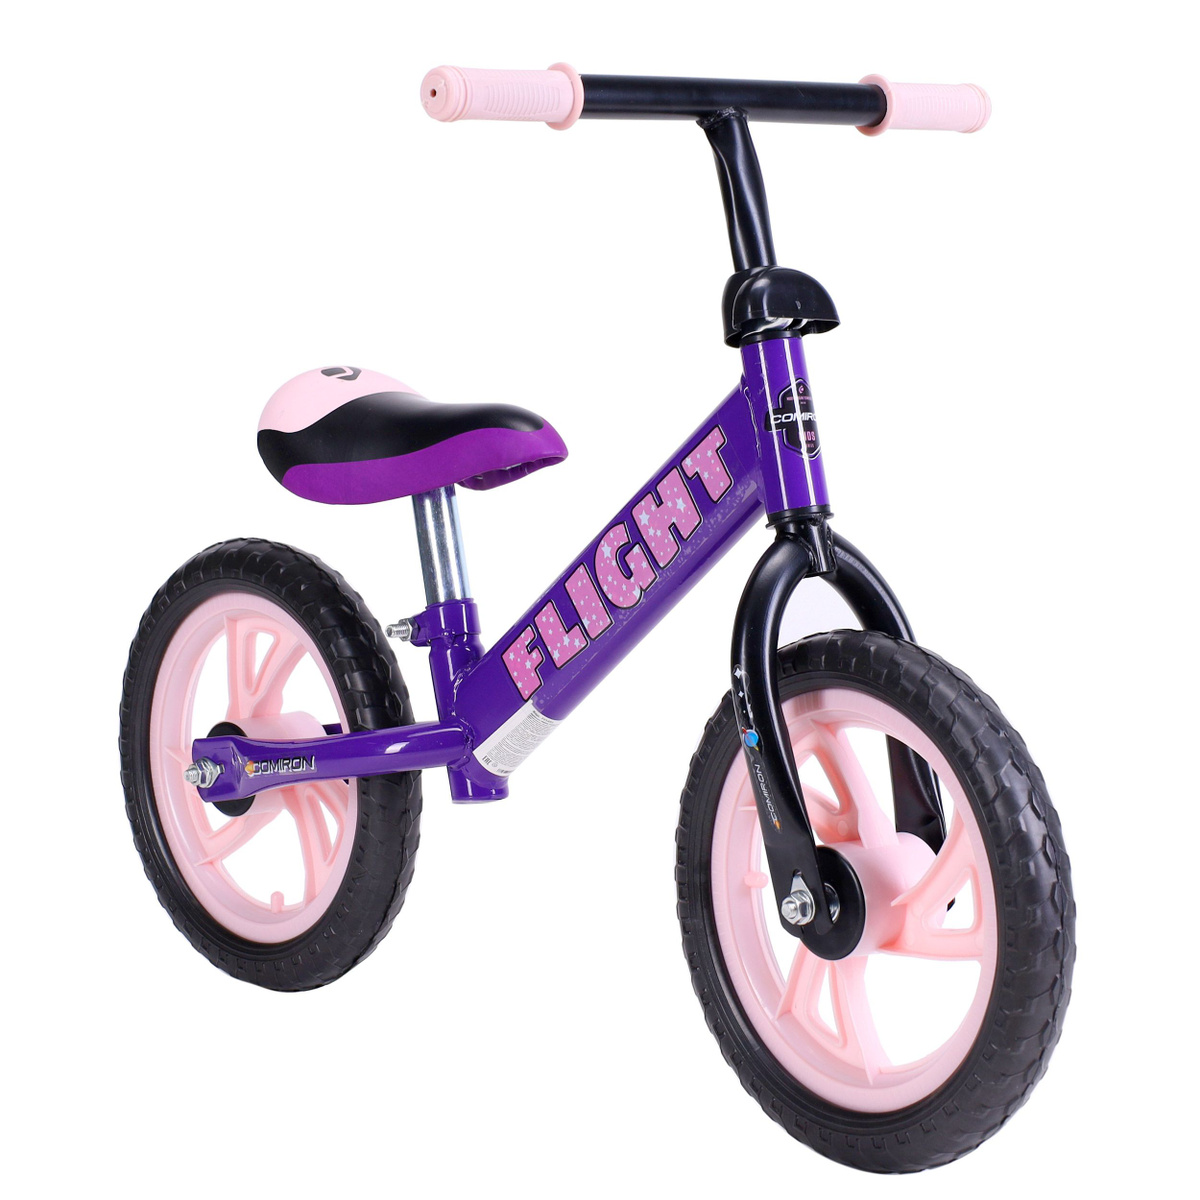 беговел; велобег; детский велосипед; велосипед для малыша; ранбайк;